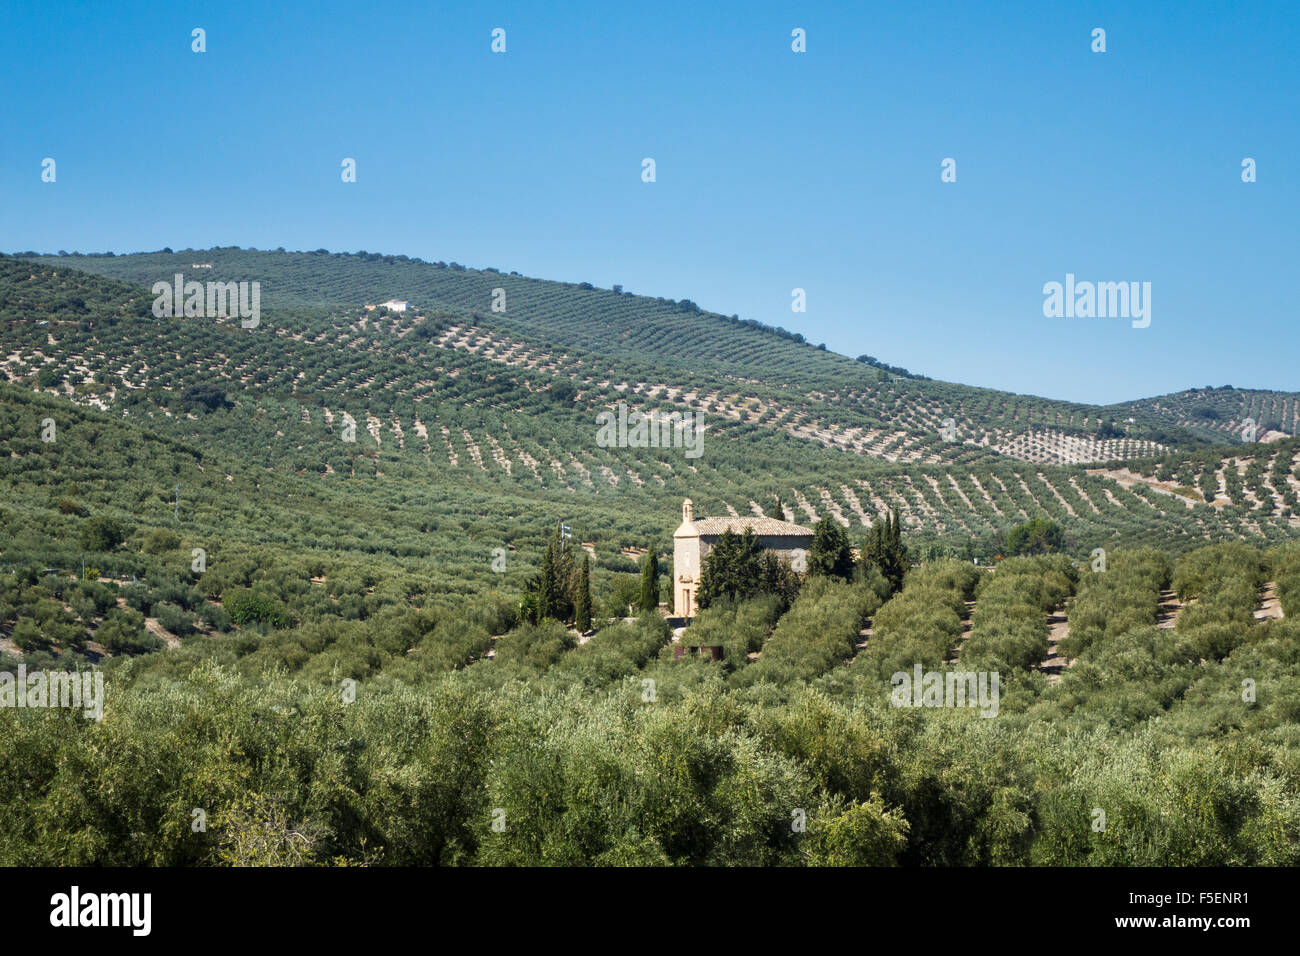 Los olivos en las colinas y laderas en Andalucía en el sur de España Foto de stock